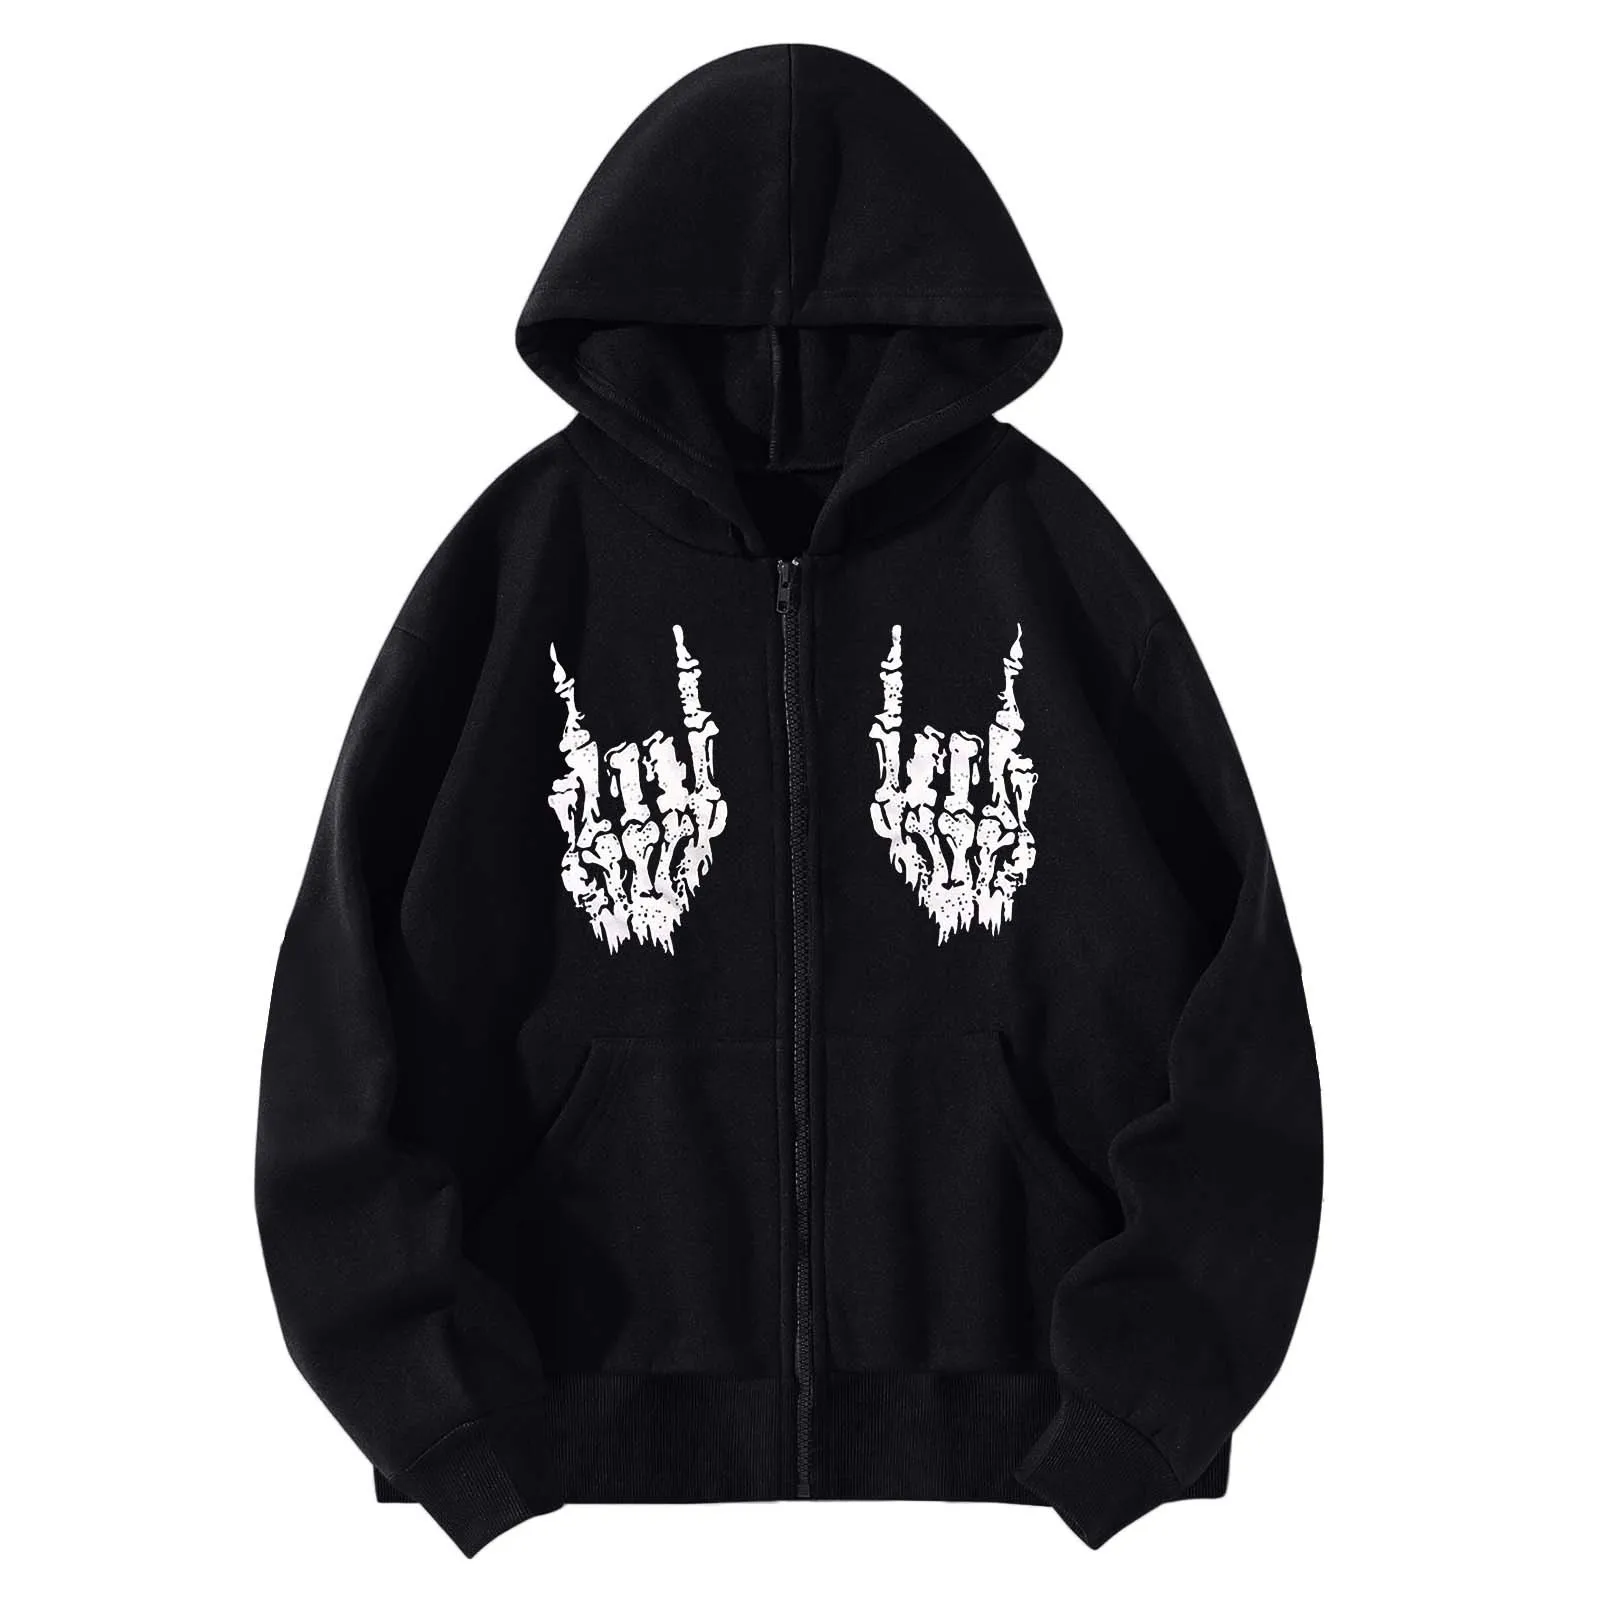 

Y2k Gothic Skeleton Hand Print Zip Up Women Hoodies Sweatshirts Hip Hop Grunge Leisure Trendy Jacket Hooded Pullover Sudaderas